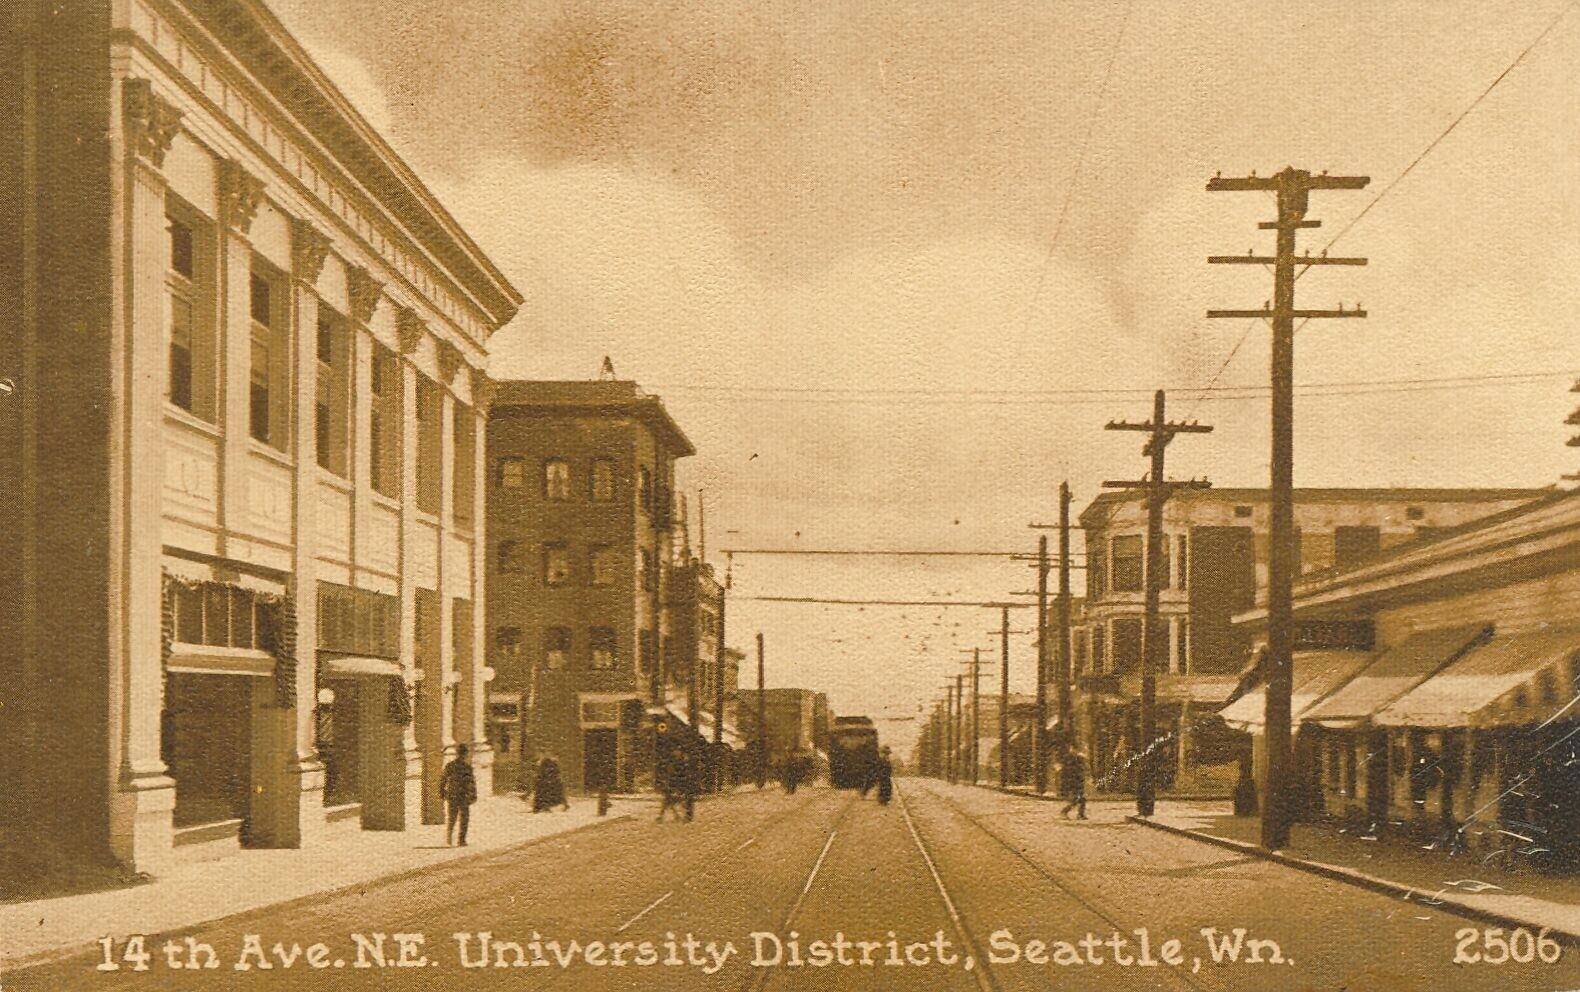 SEATTLE WA - 14th Avenue N.E. University District Postcard